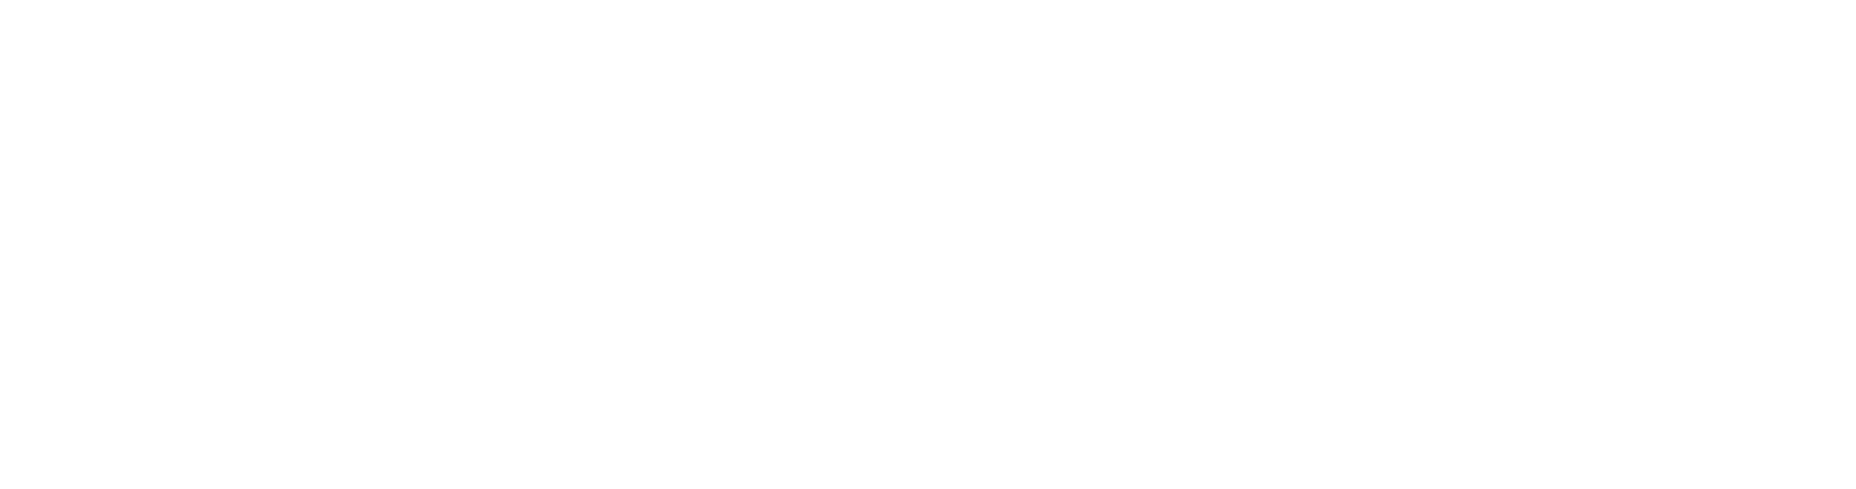 NPAworldwide logo